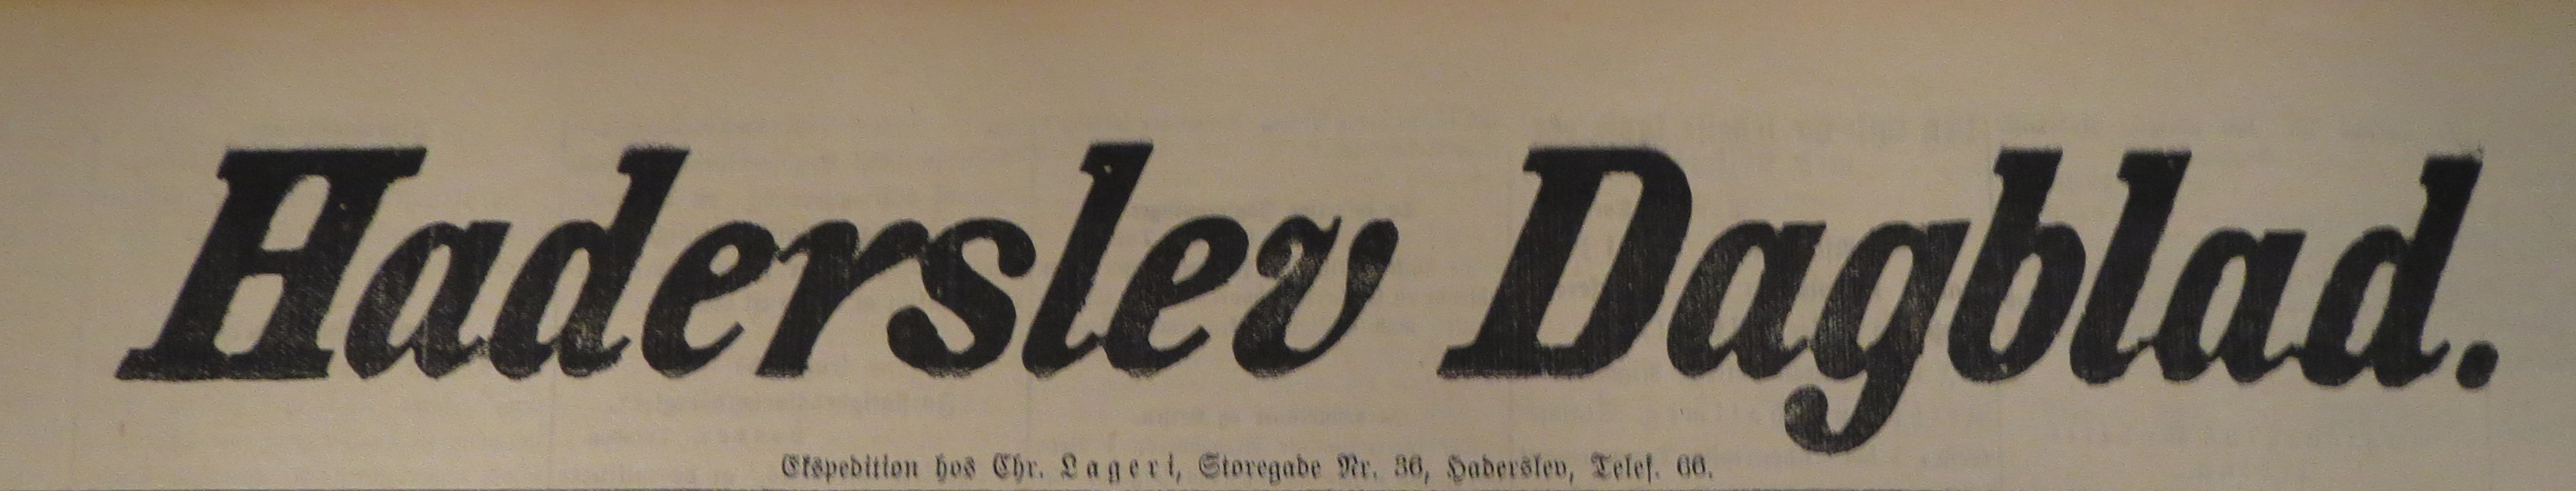 31. juli 1914. Haderslev Dagblad: Krigen, kornpriserne og mund & klovsygen